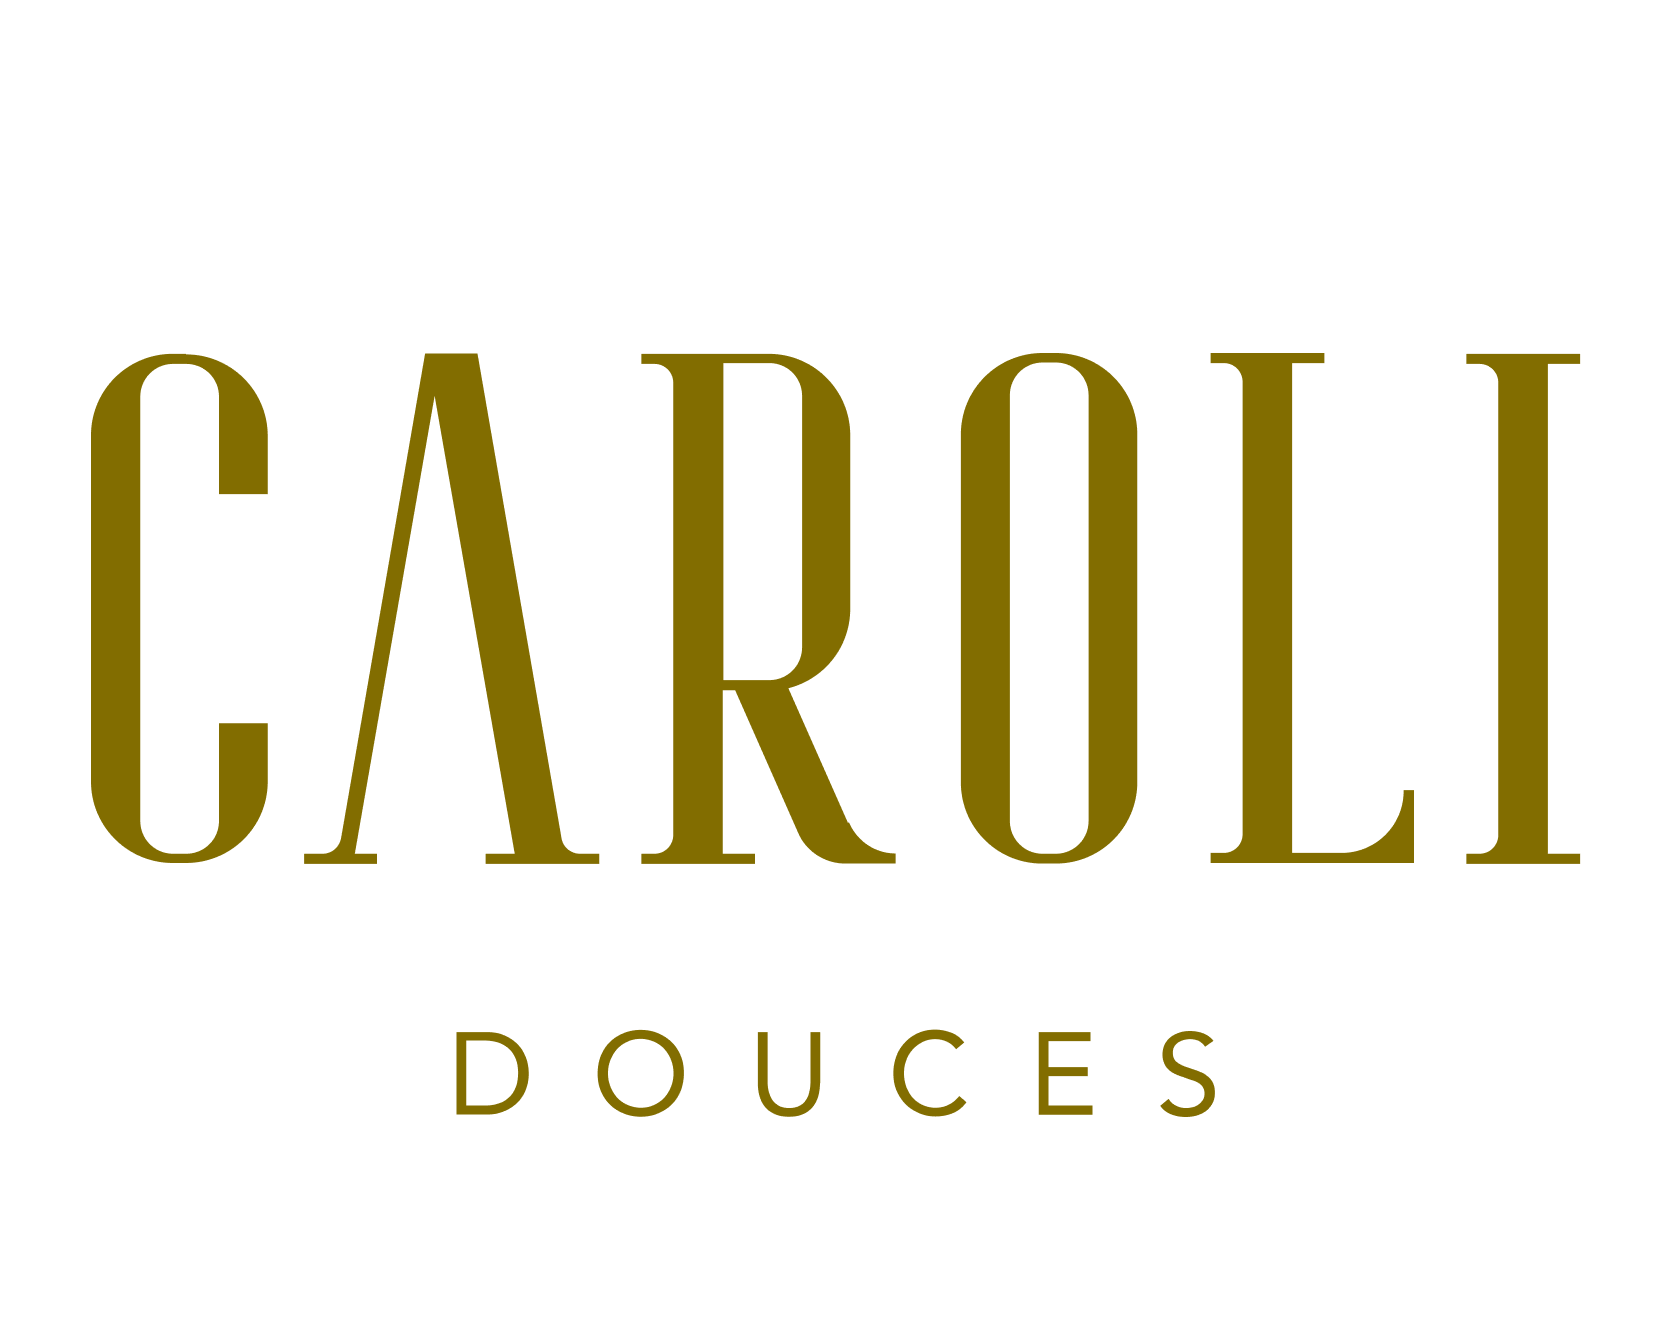 Caroli Douces